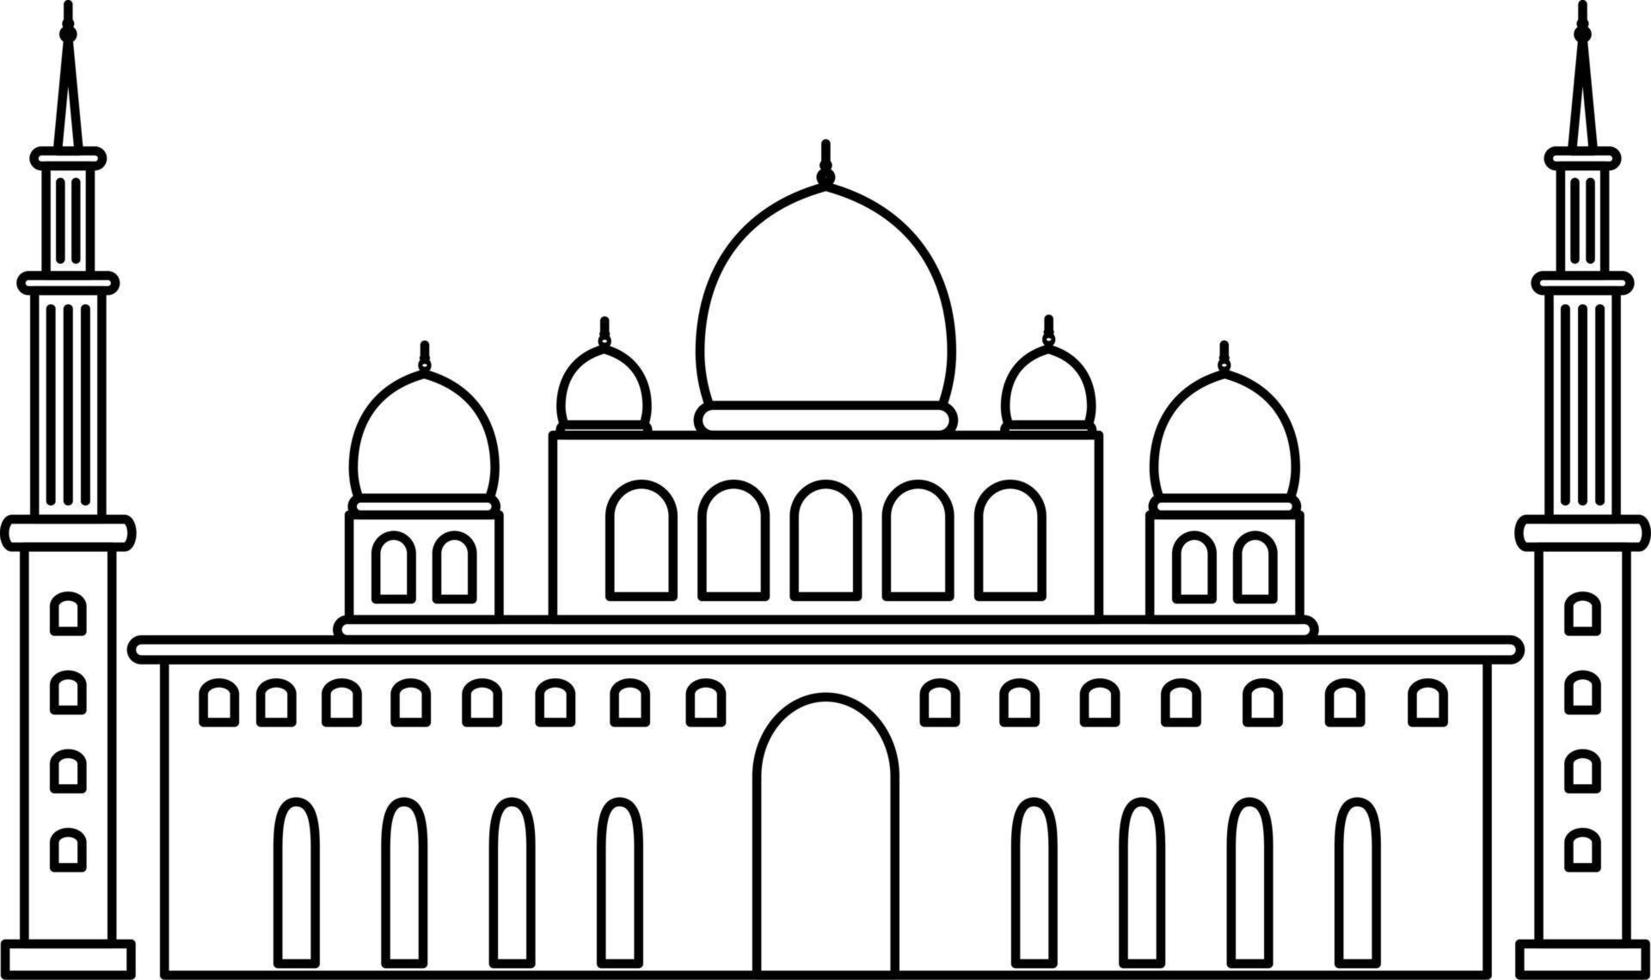 vector de contorno de mezquita